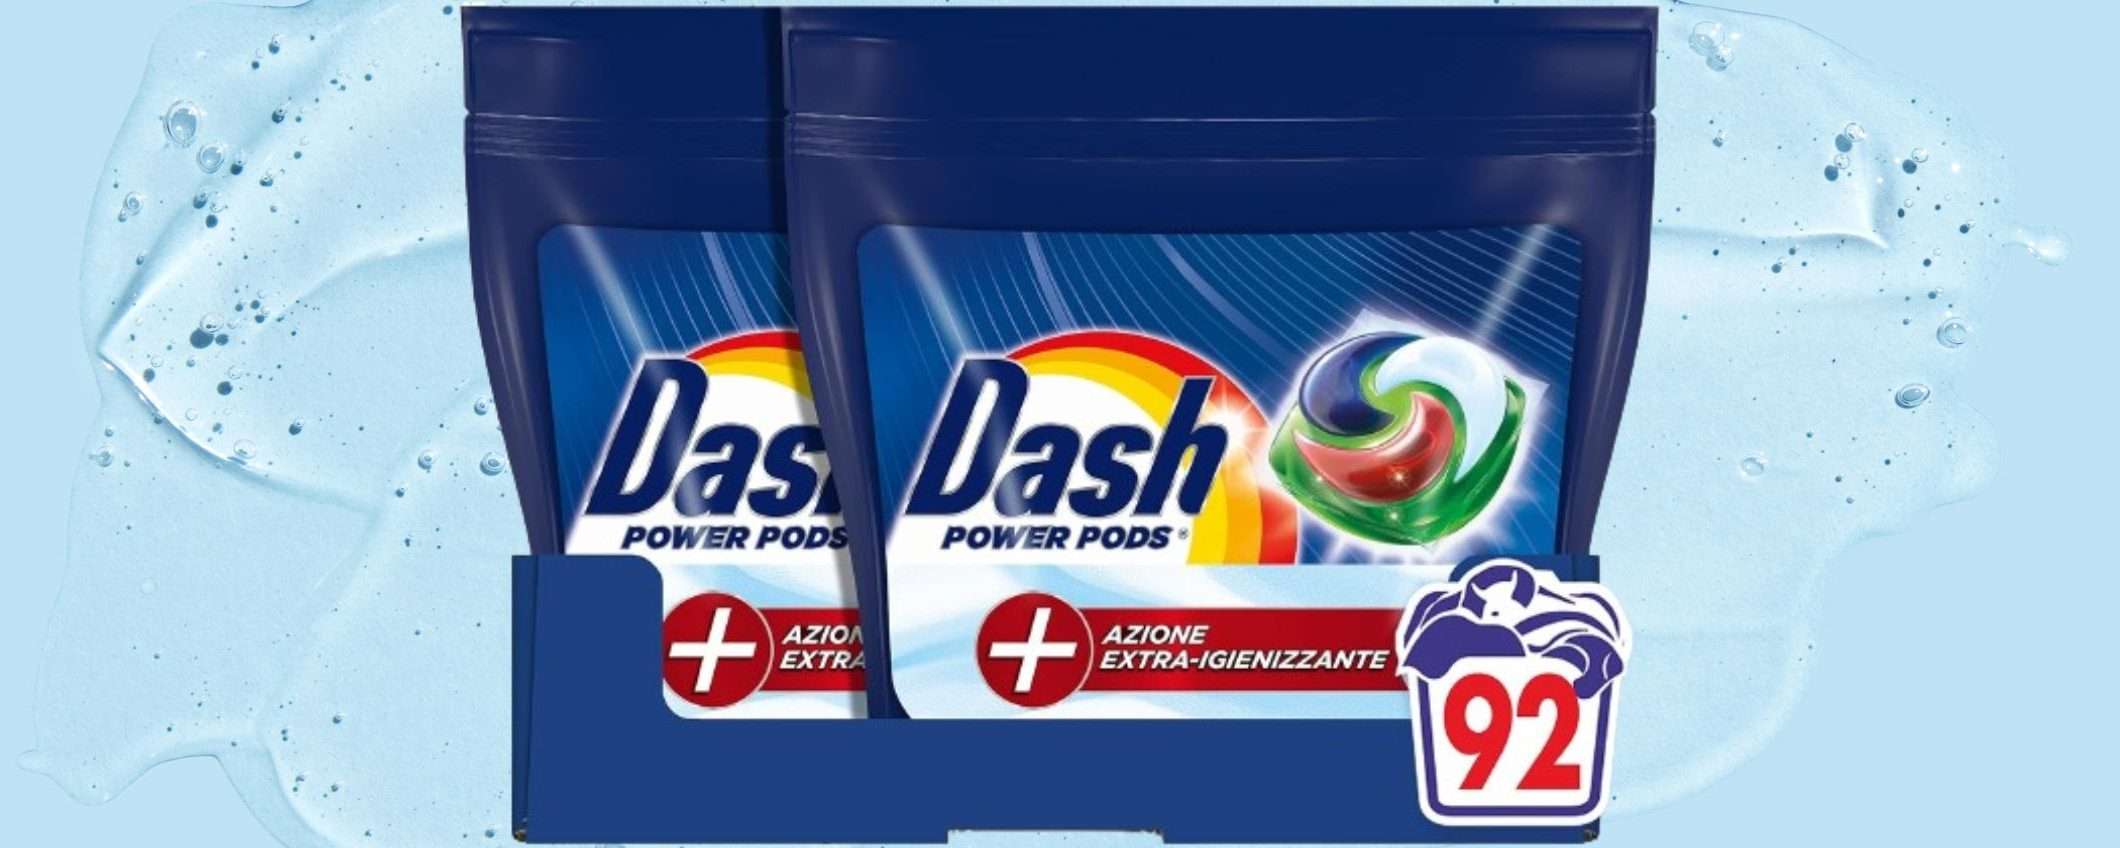 Dash Pods a prezzo SHOCK, sconto 42%: 92 lavaggi a 27€ (promo lampo Amazon)